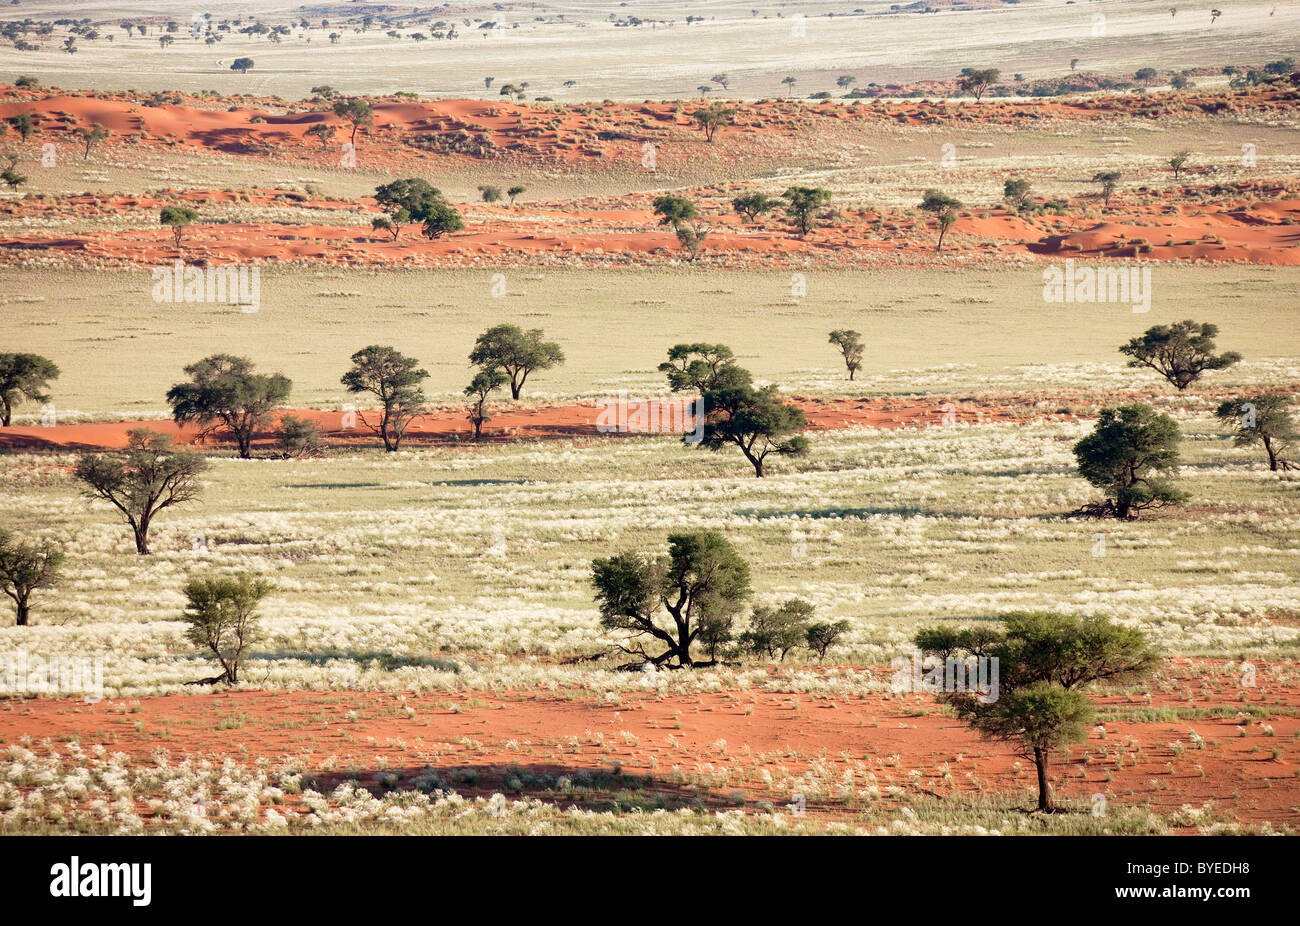 Erba-cresciute le dune di sabbia e alberi Camelthorn sul bordo del deserto del Namib. Foto Stock